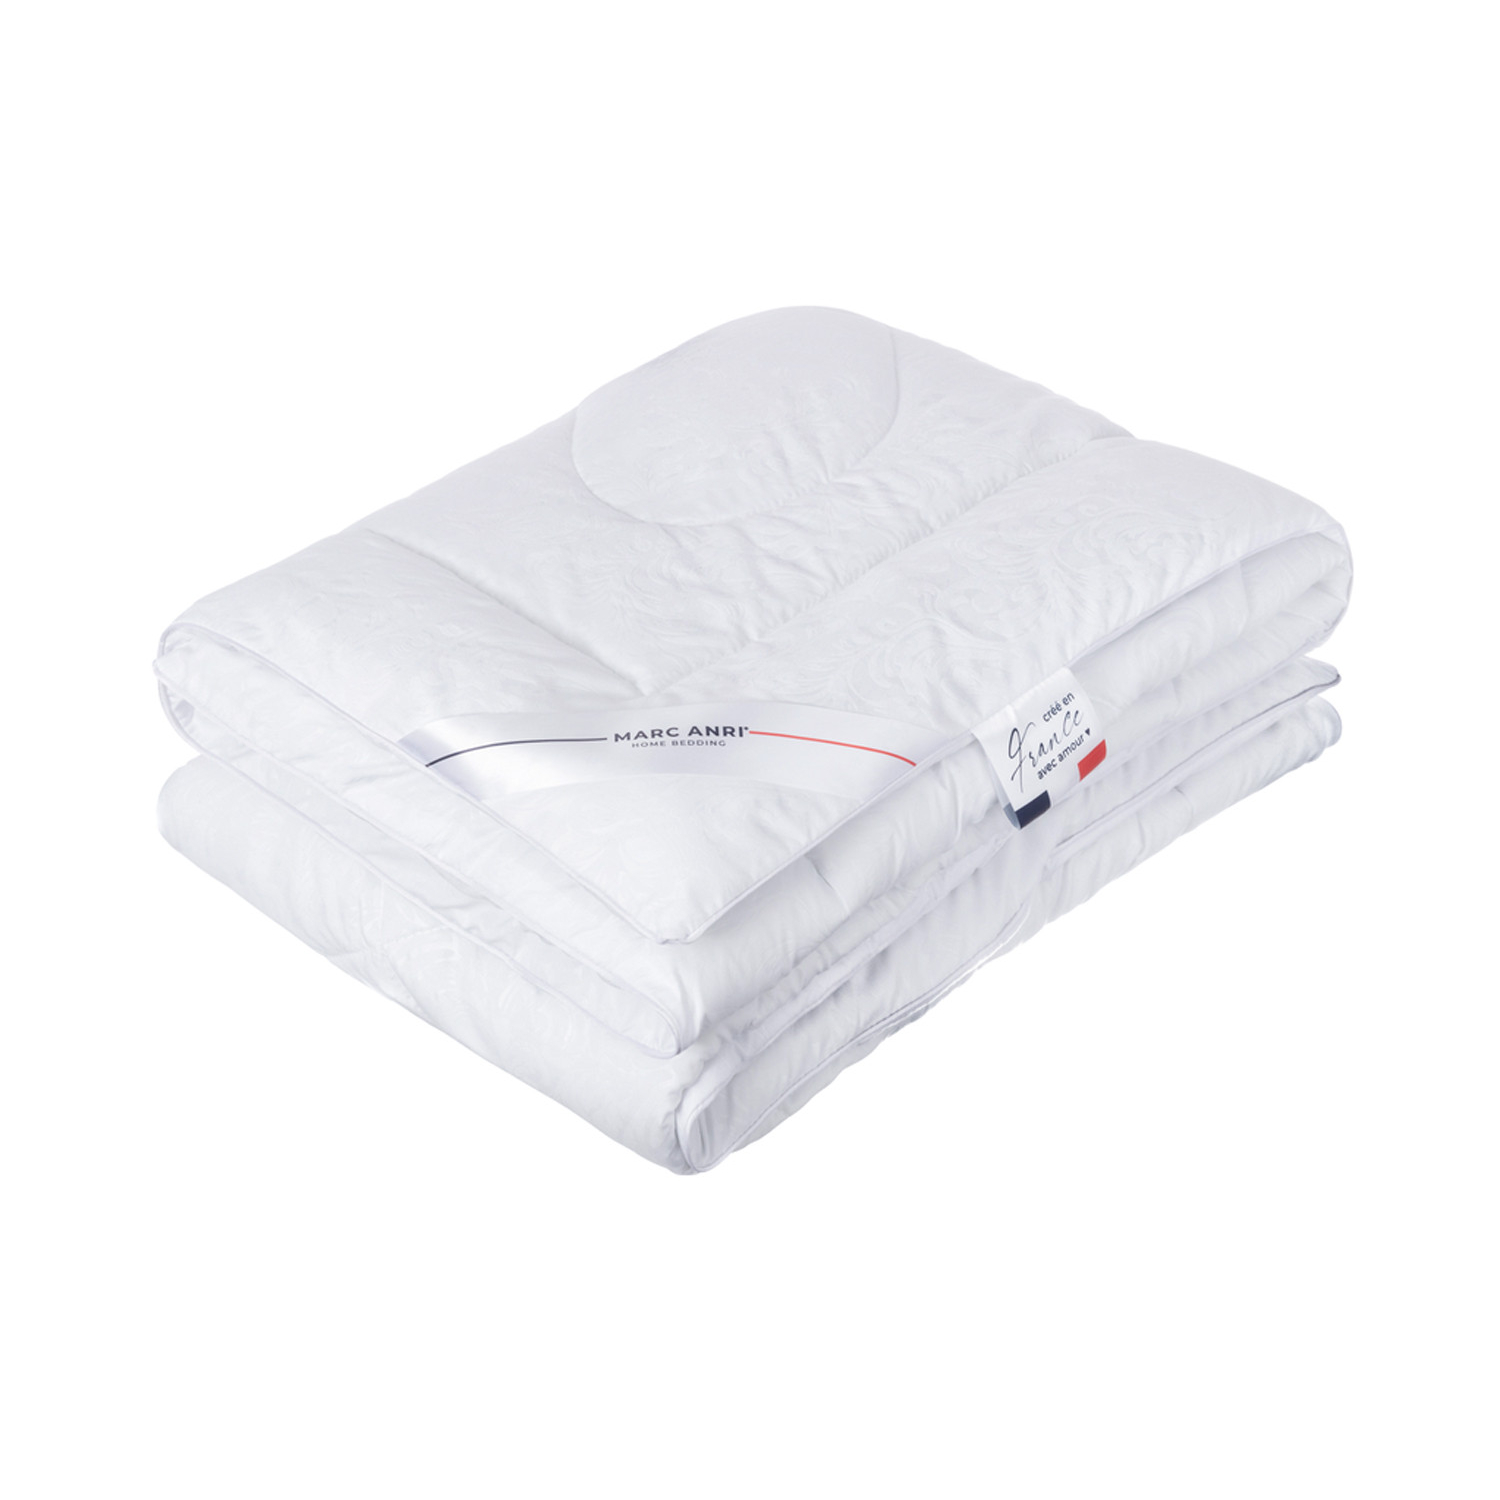 Где купить Одеяло Marc Anri Chinon белое 200х220 см (MA-MF) Marc Anri 